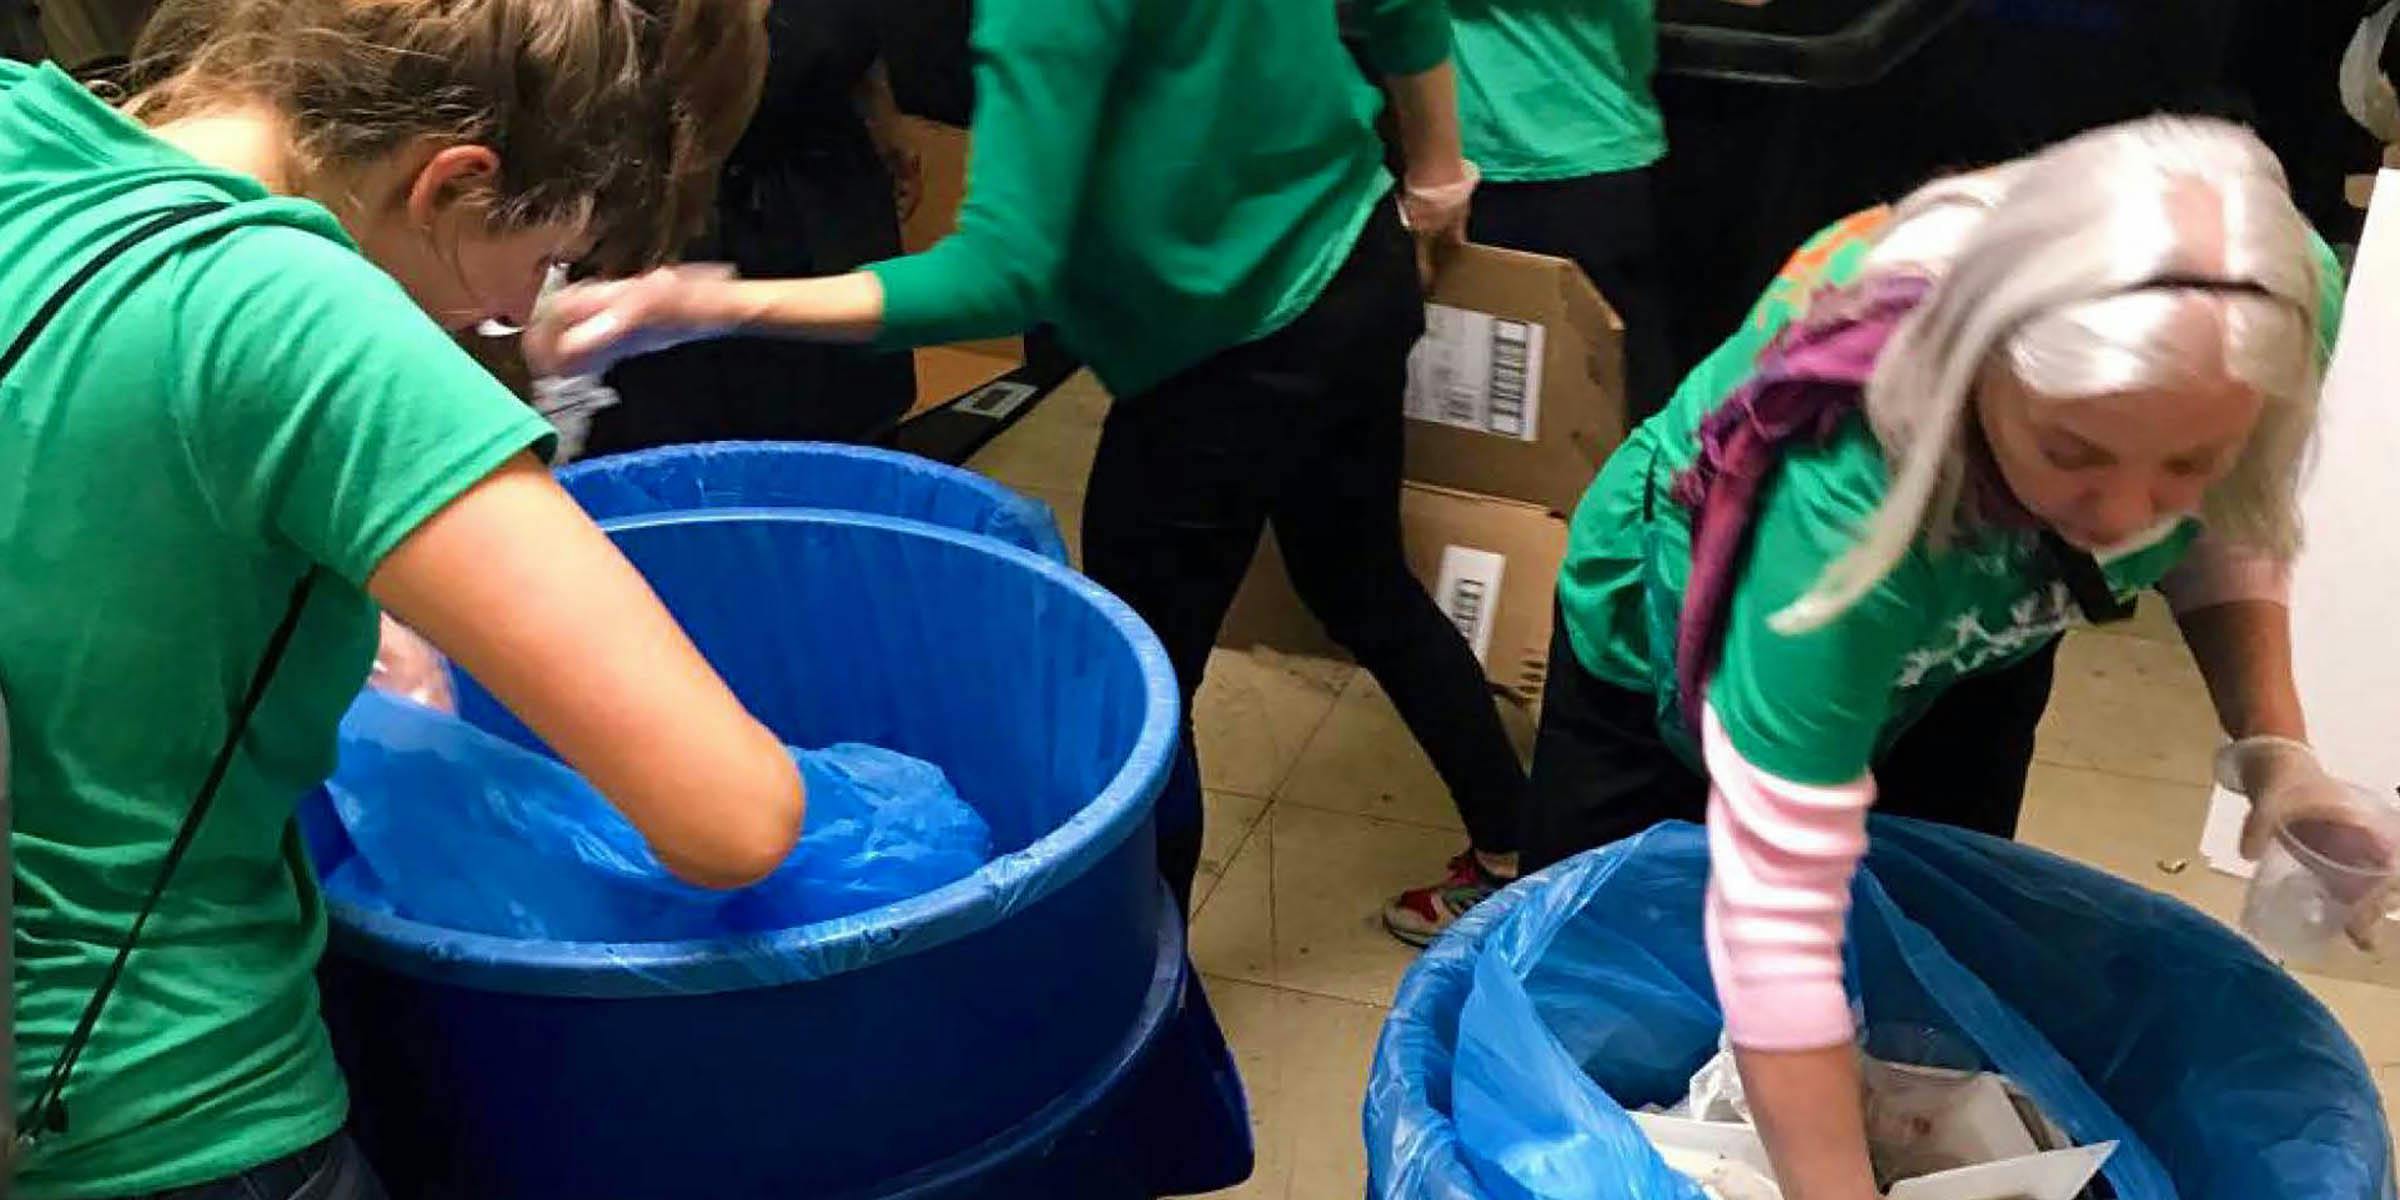 Two women wearing green shirts reaching into large blue recycling bins